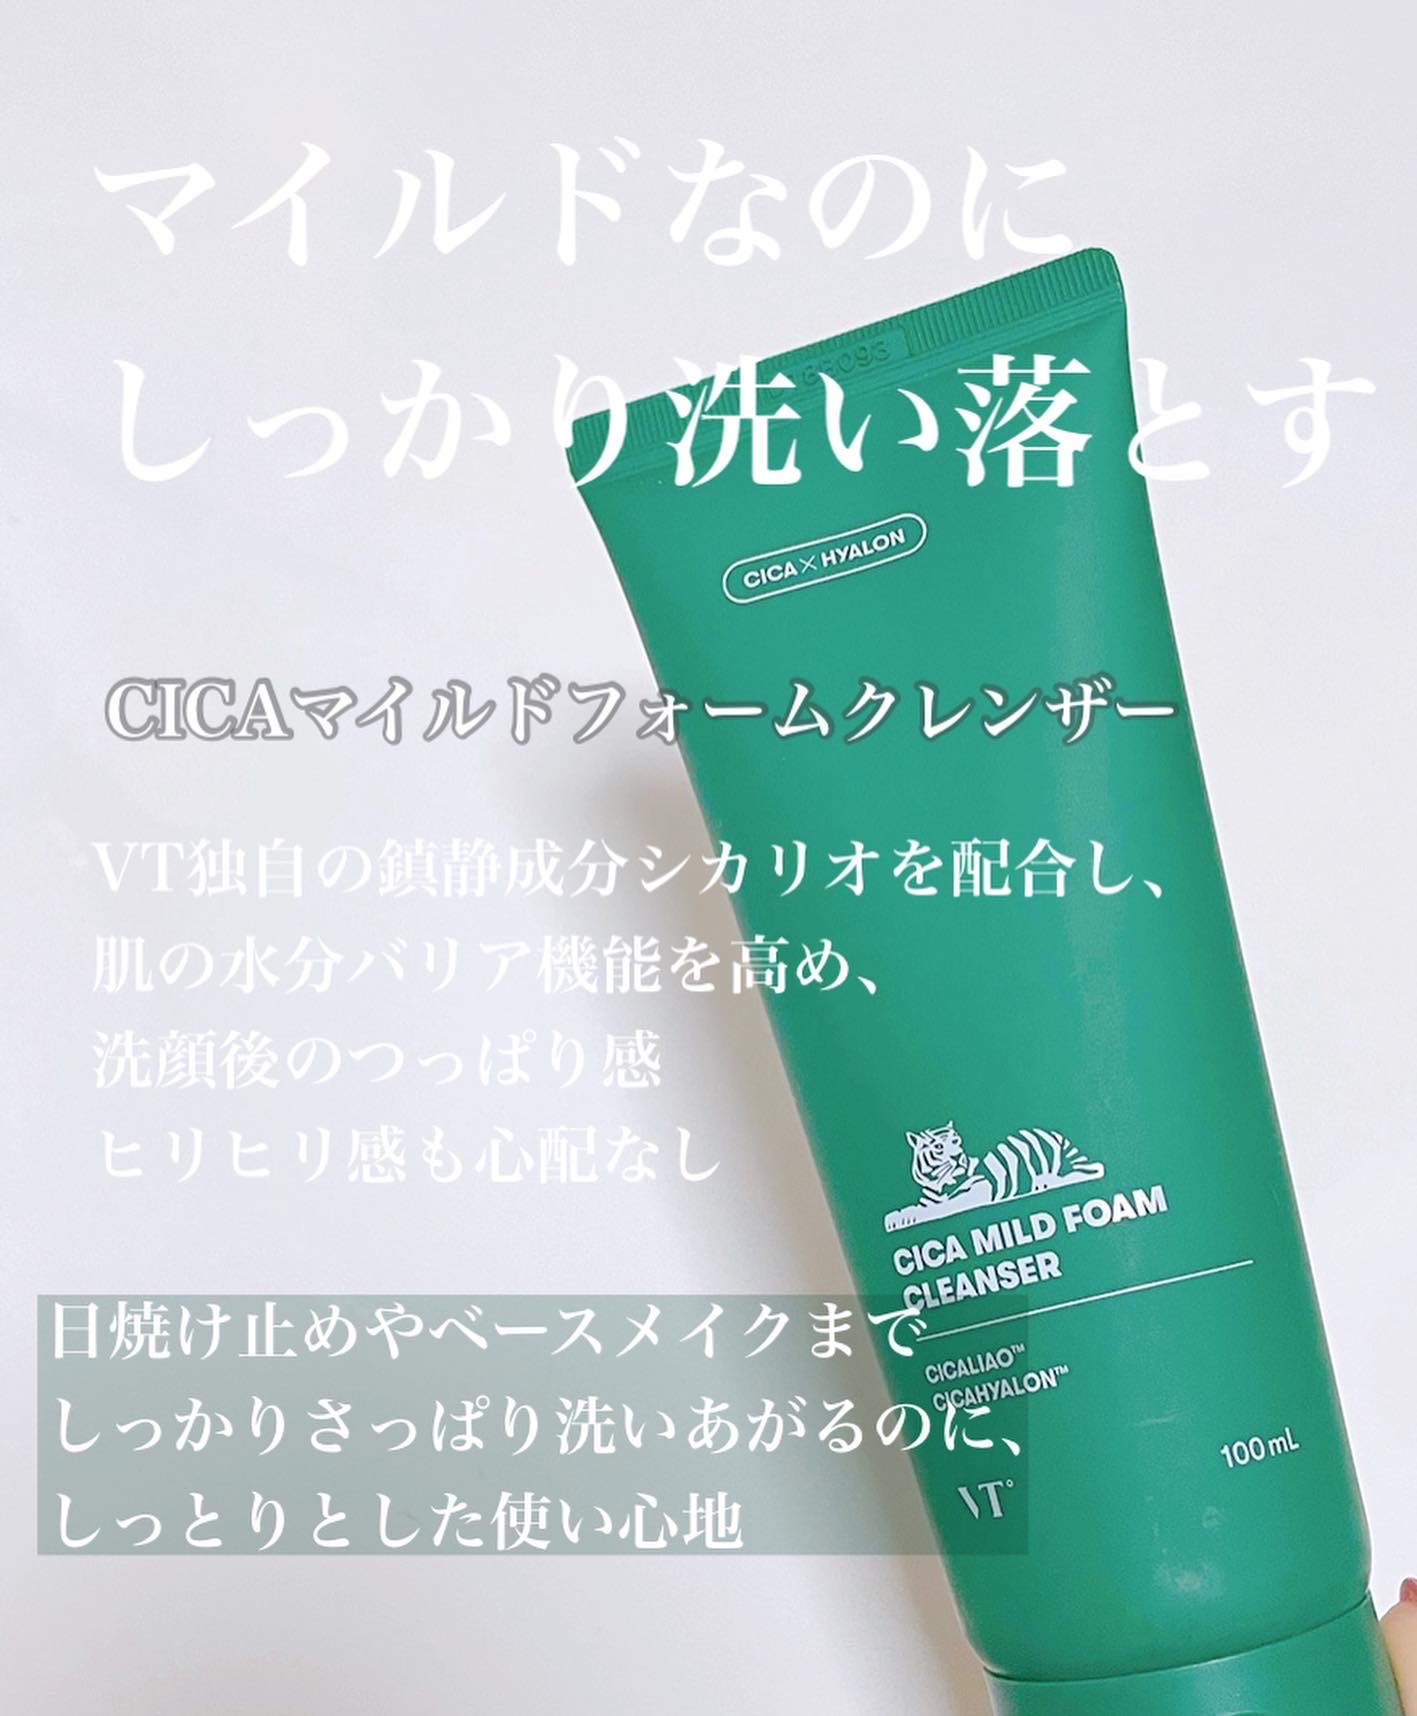 VT CICA マイルドフォームクレンザー(100ml) - 洗顔料